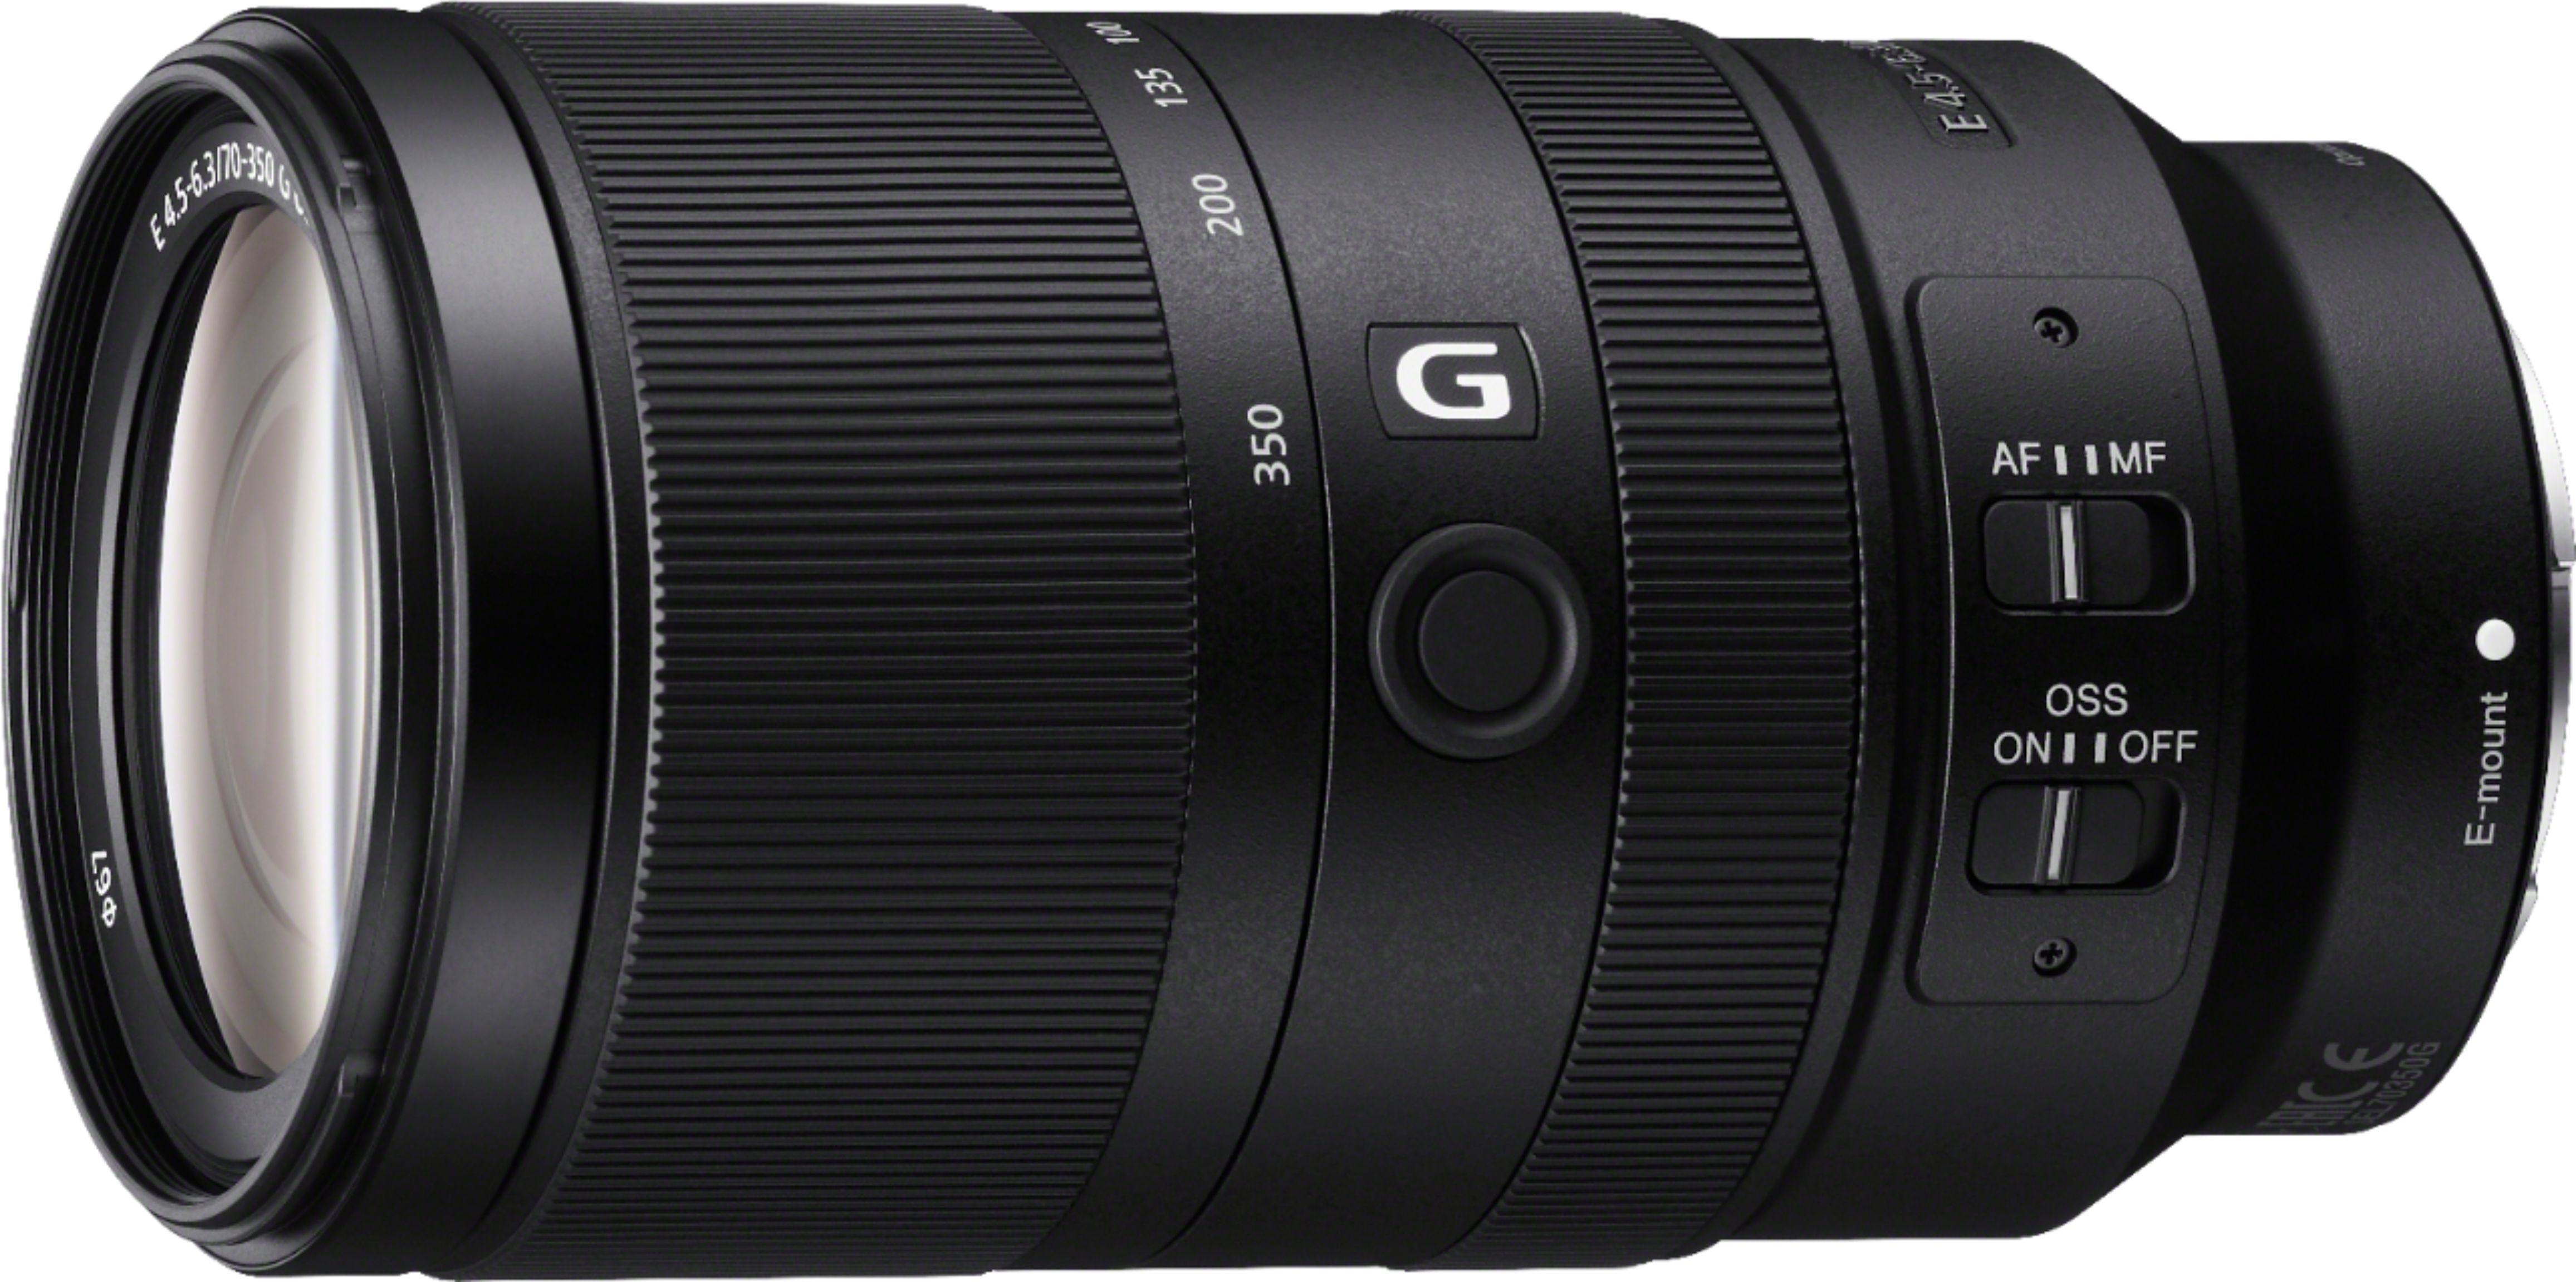 Sony E 70-350mm F4.5-6.3 G OSS Telephoto Zoom Lens for E